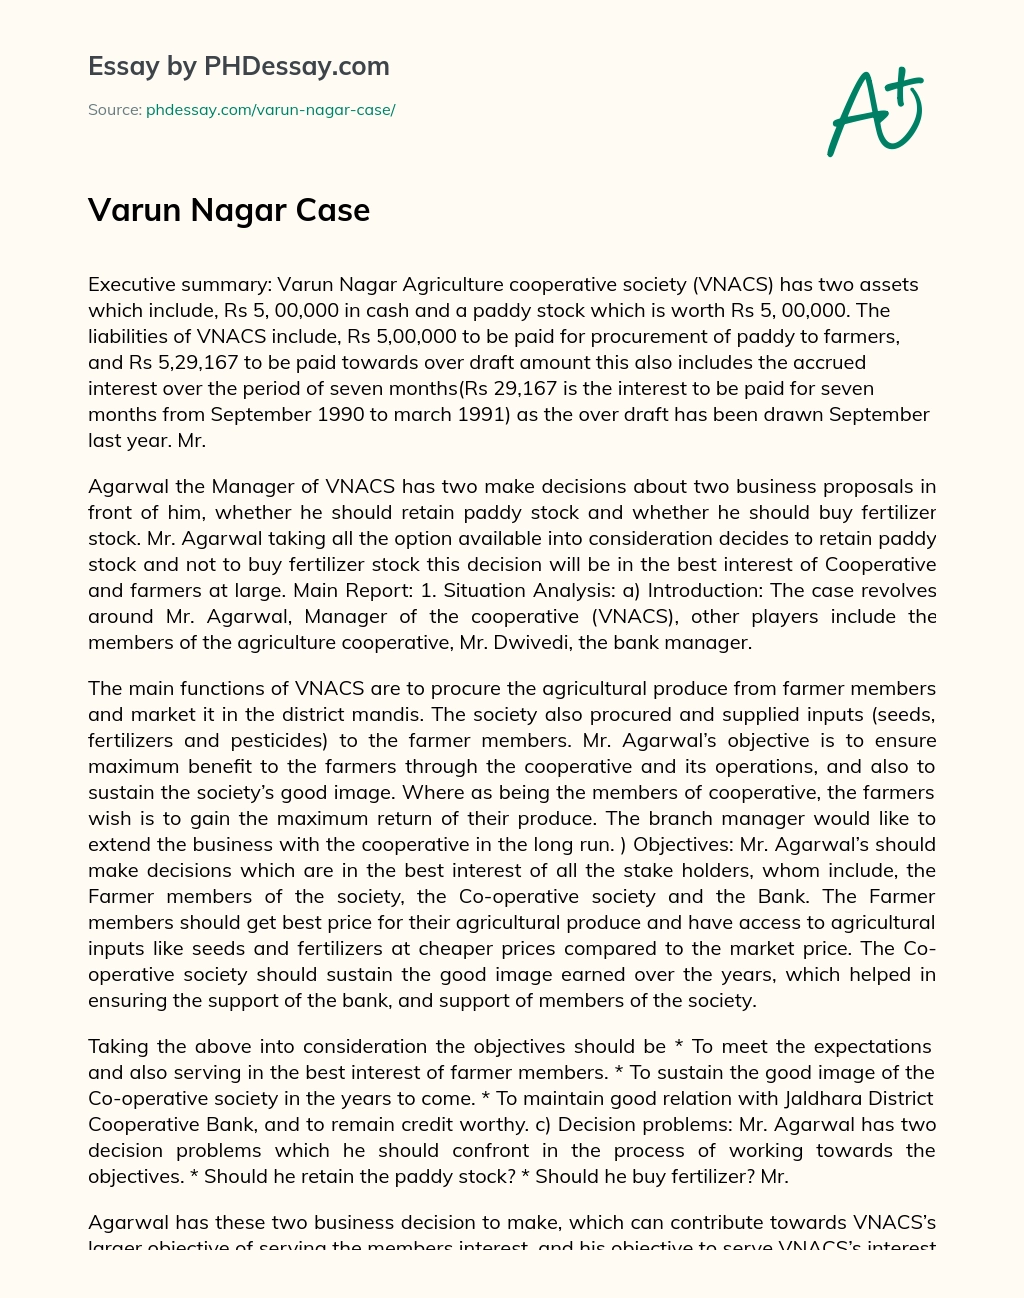 Varun Nagar Case essay